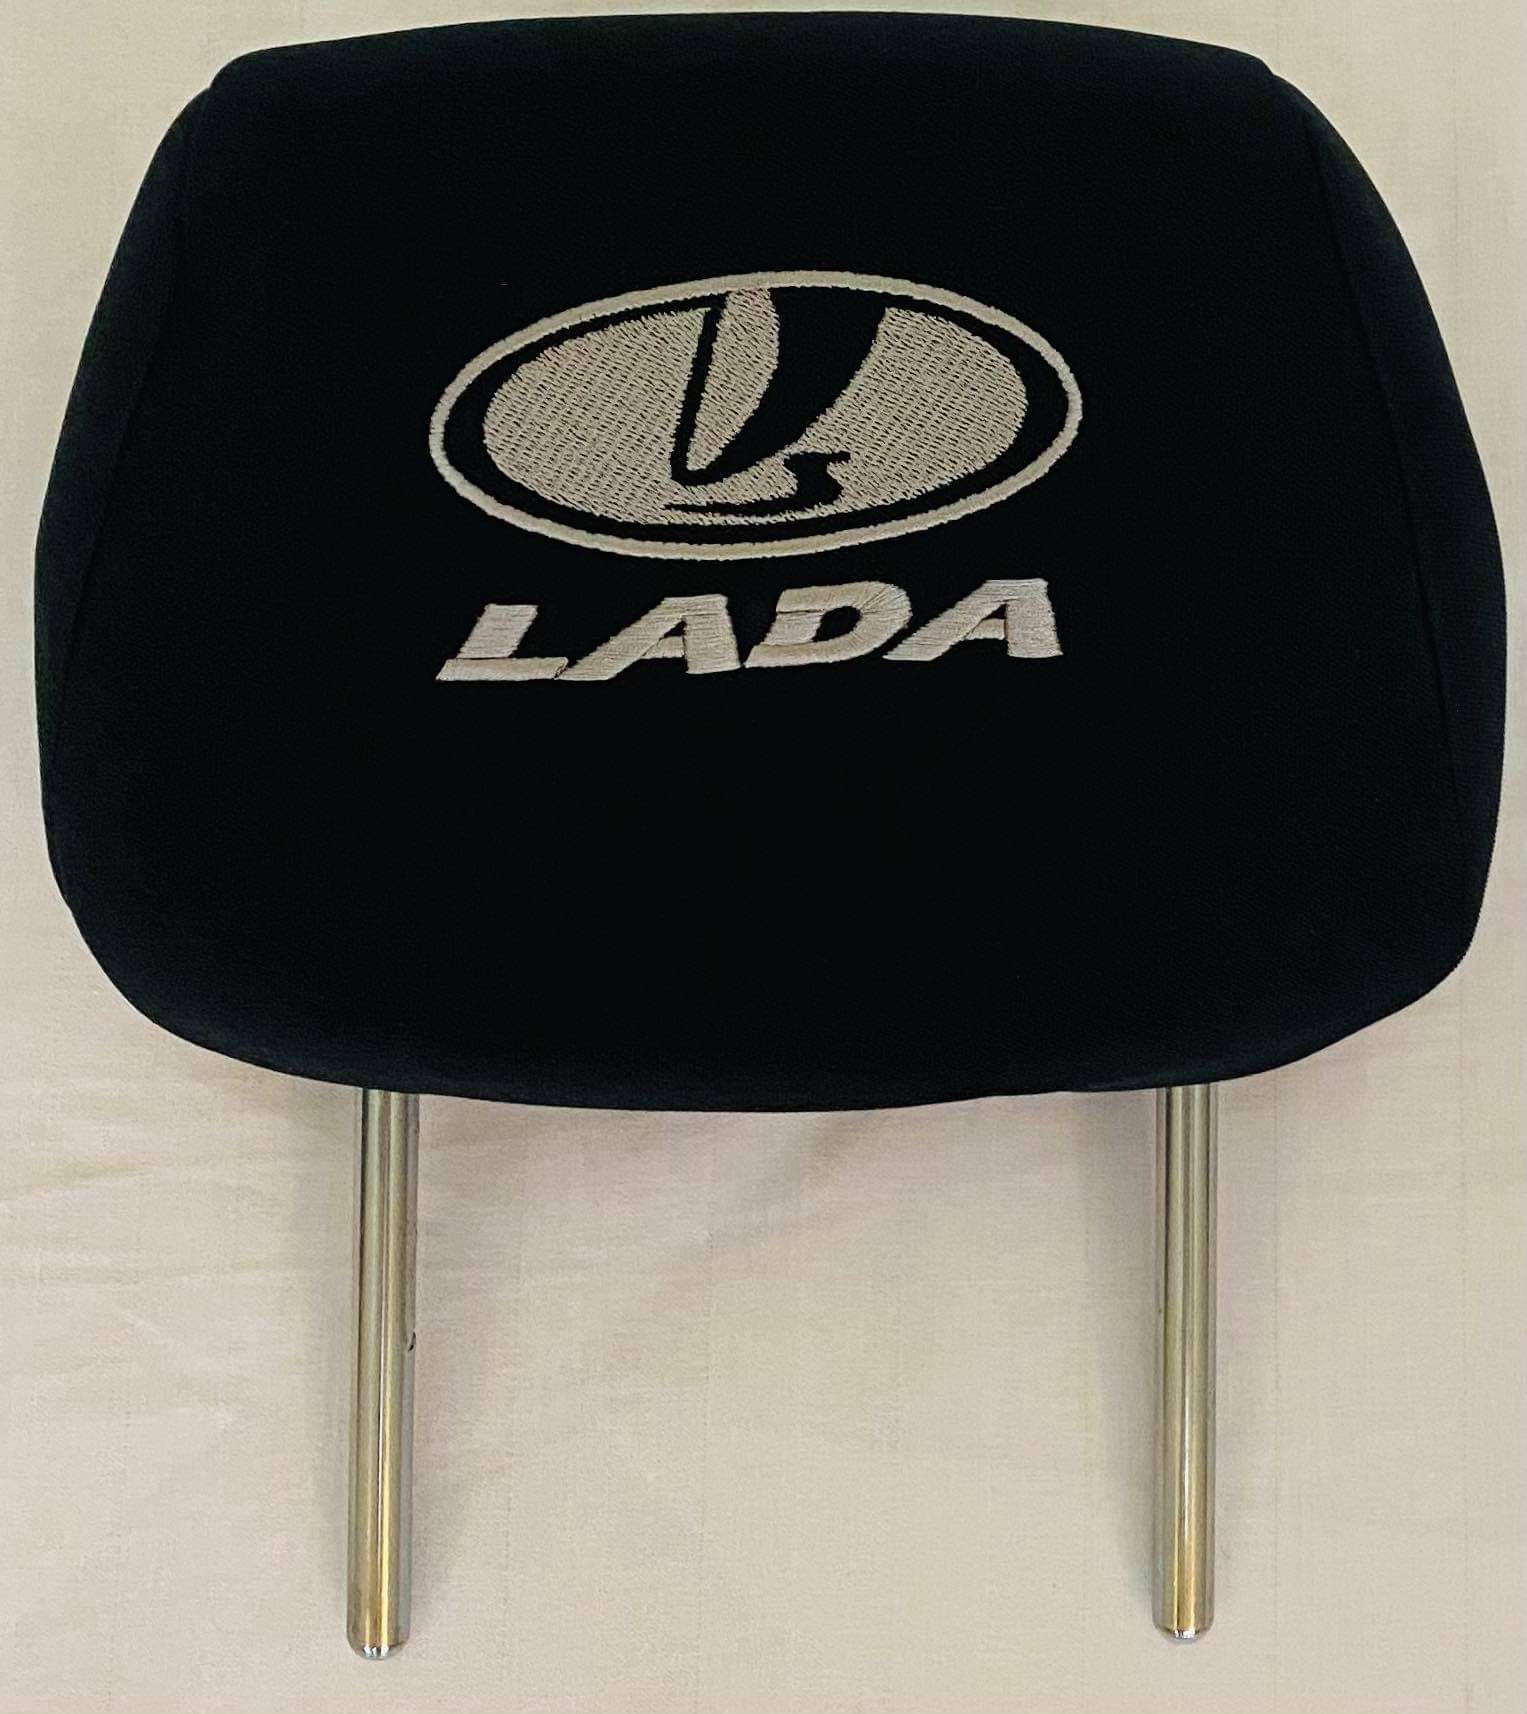 Čierne návleky na opierky hlavy s logom Lada - 2ks